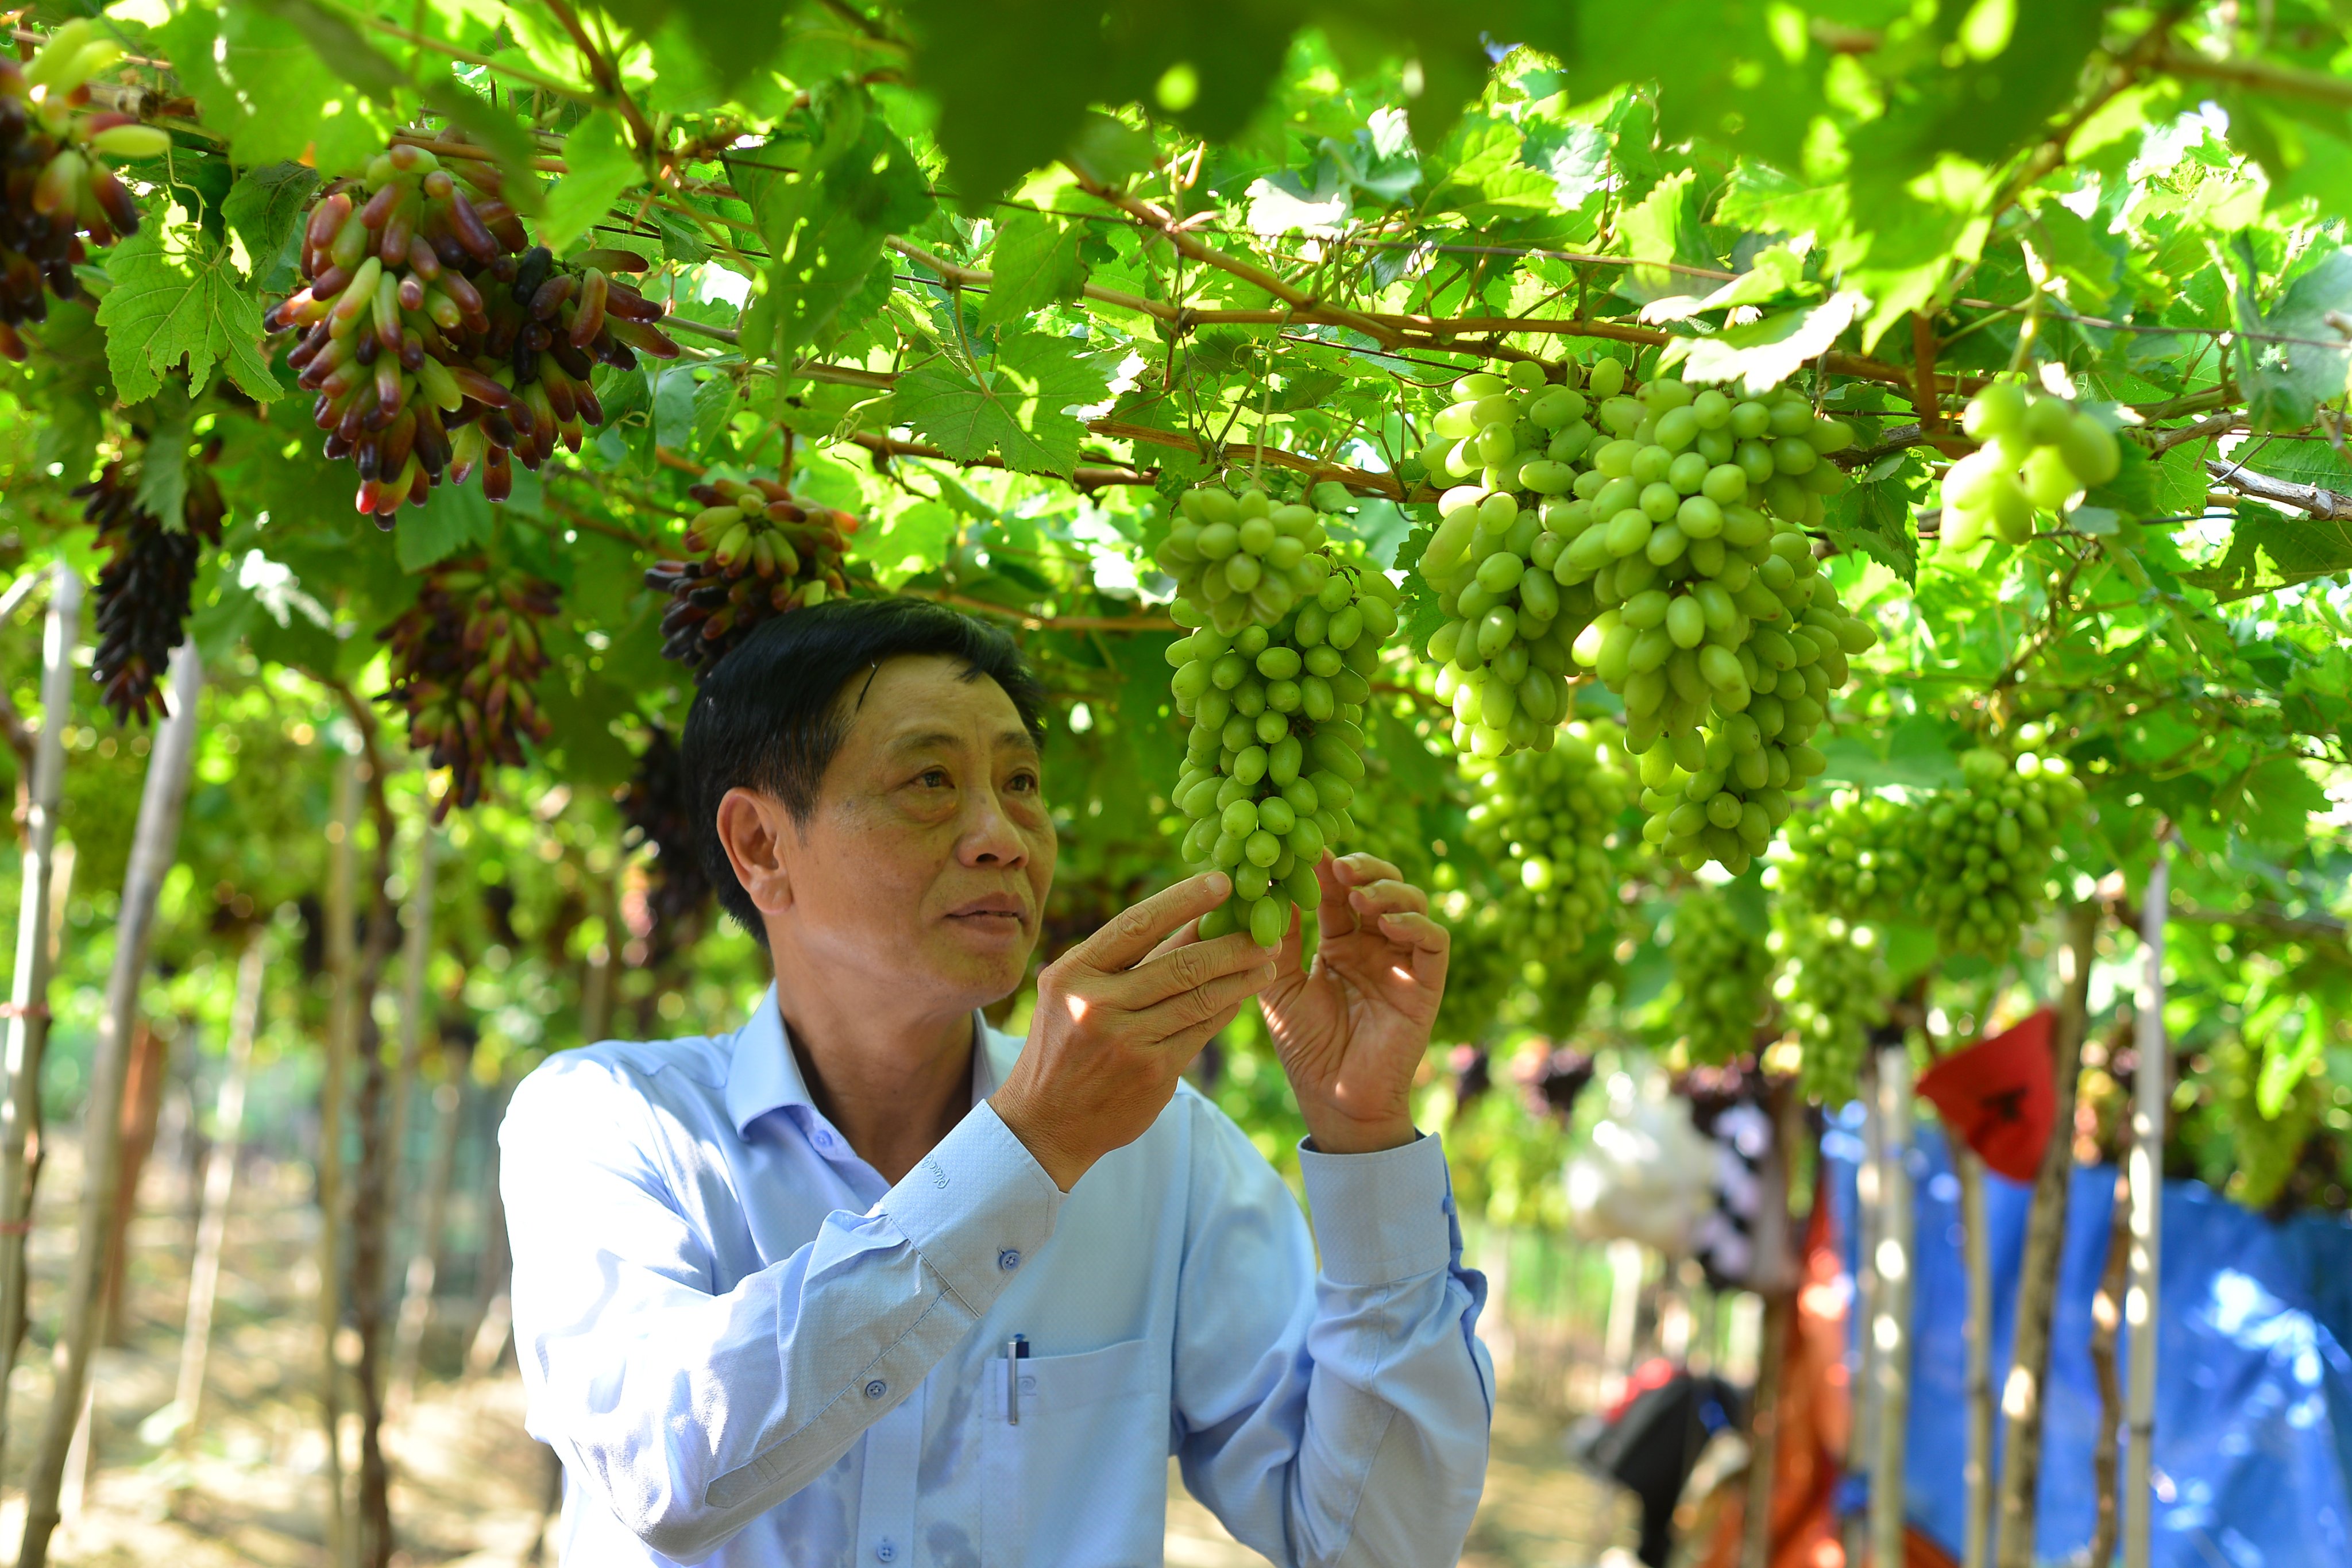 Lễ hội Nho và Vang Ninh Thuận là dịp để tôn vinh những giá trị mà cây nho mang lại cho địa phương này. Ảnh: M.H.